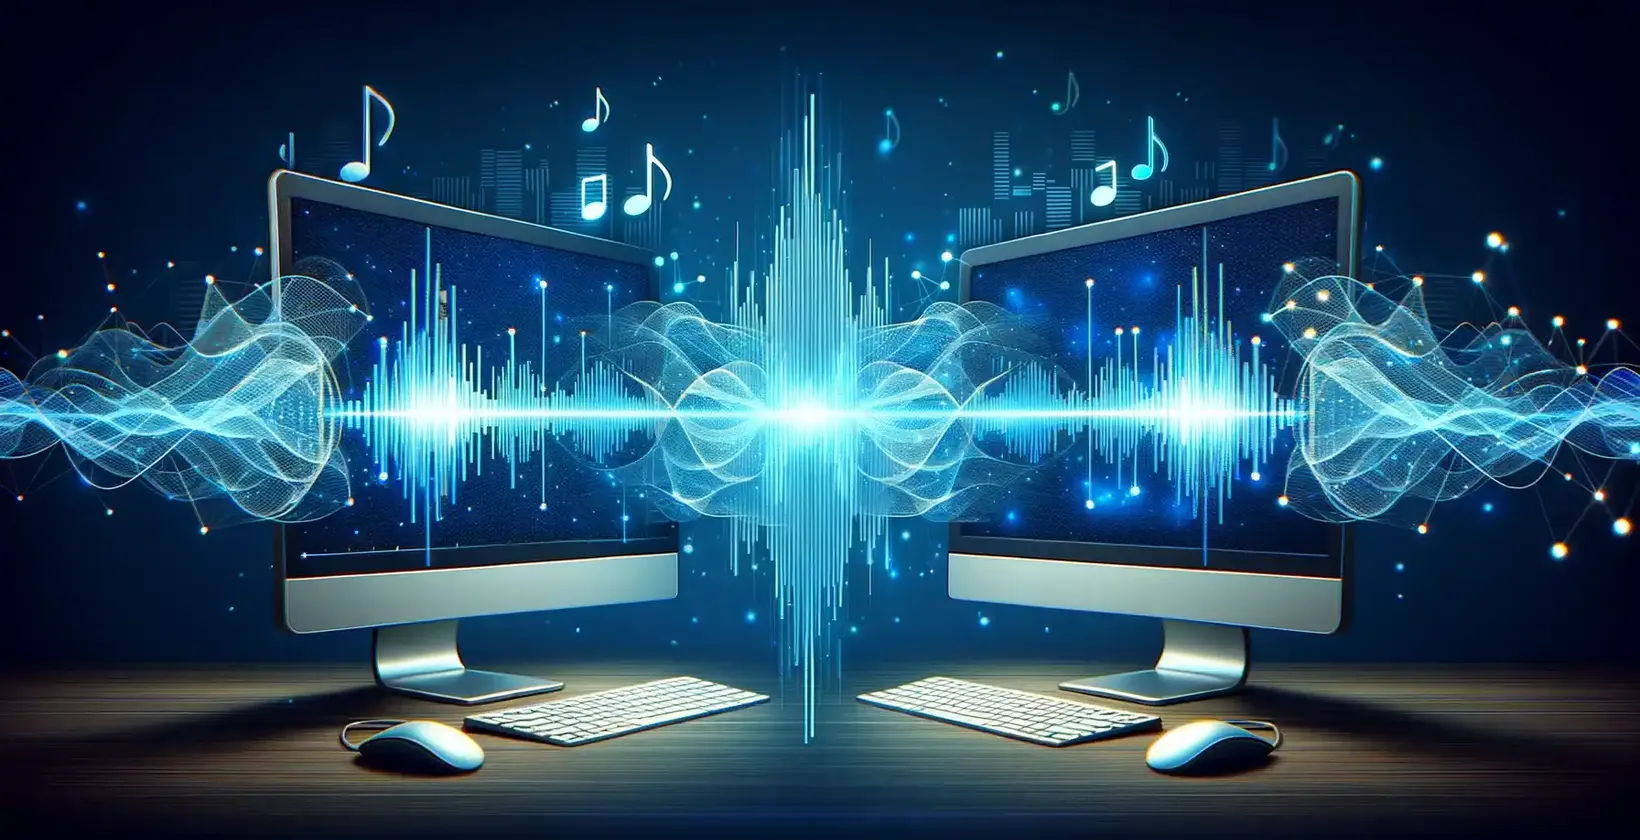 Două ecrane de calculator care prezintă note muzicale și unde sonore, ilustrând vizualizarea audio.